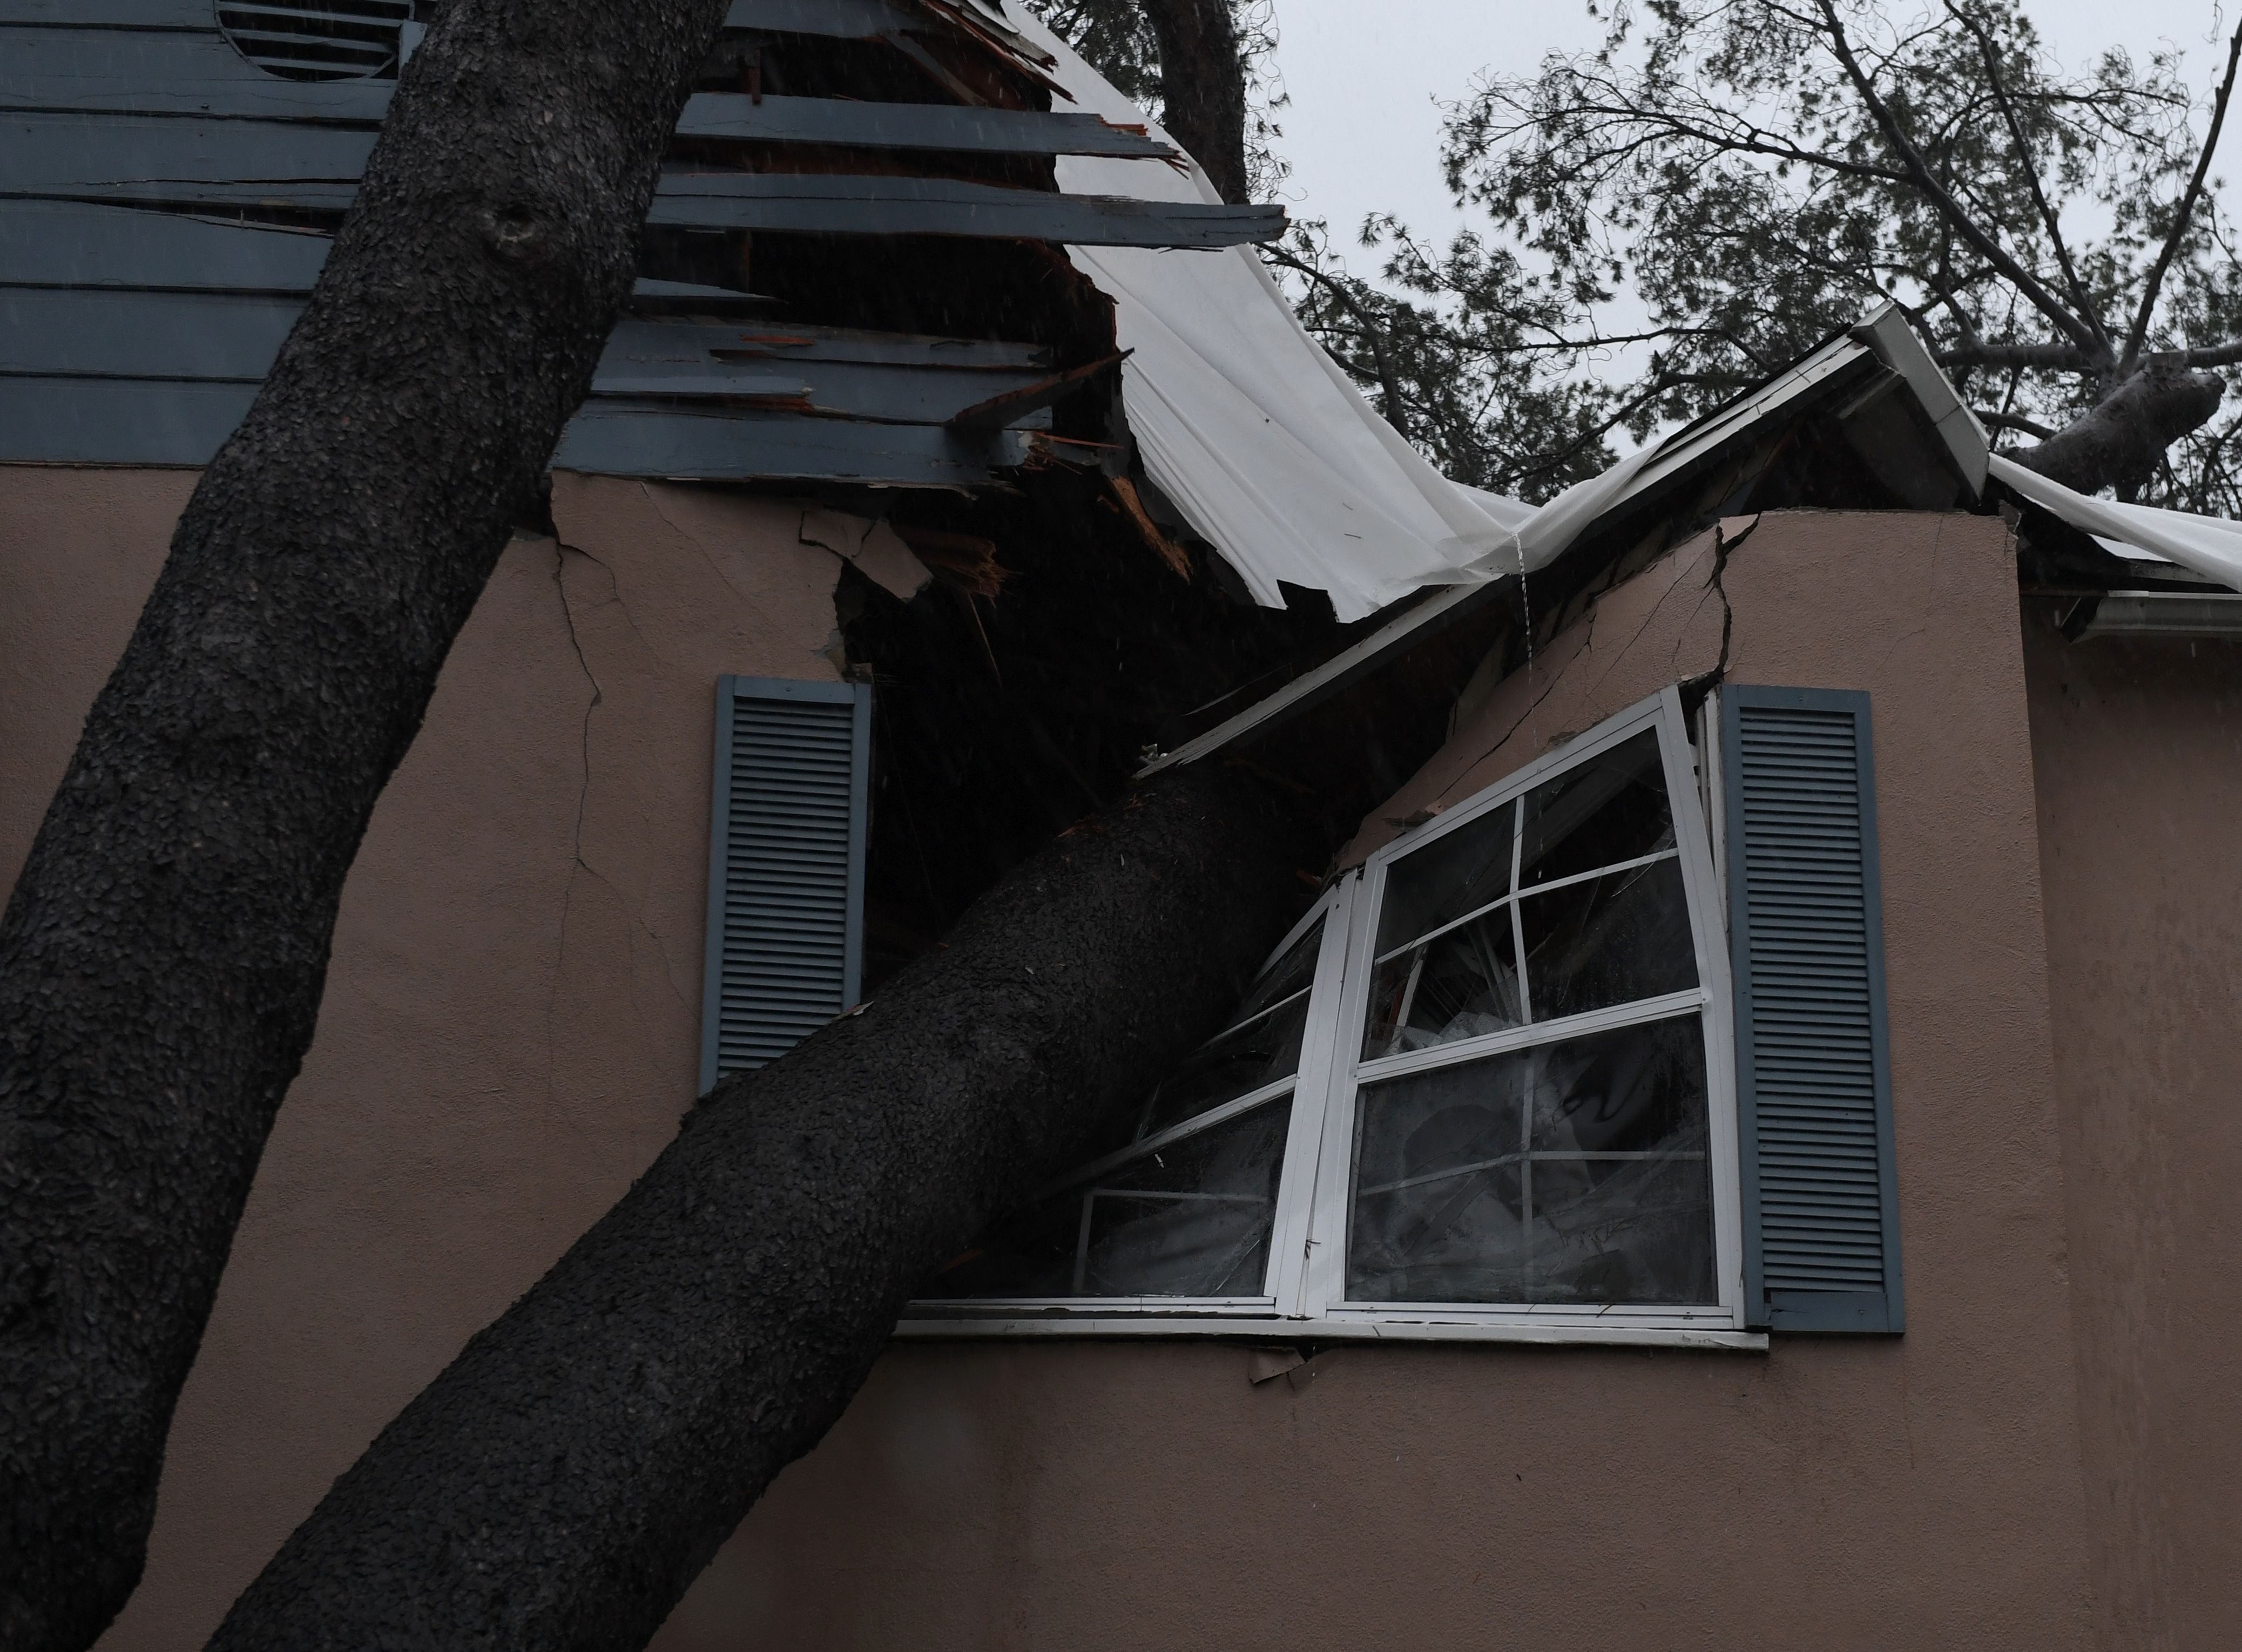 شجرة ضخمة تحطم منزل بعد سقوطها نتيجة عاصفة شديدة